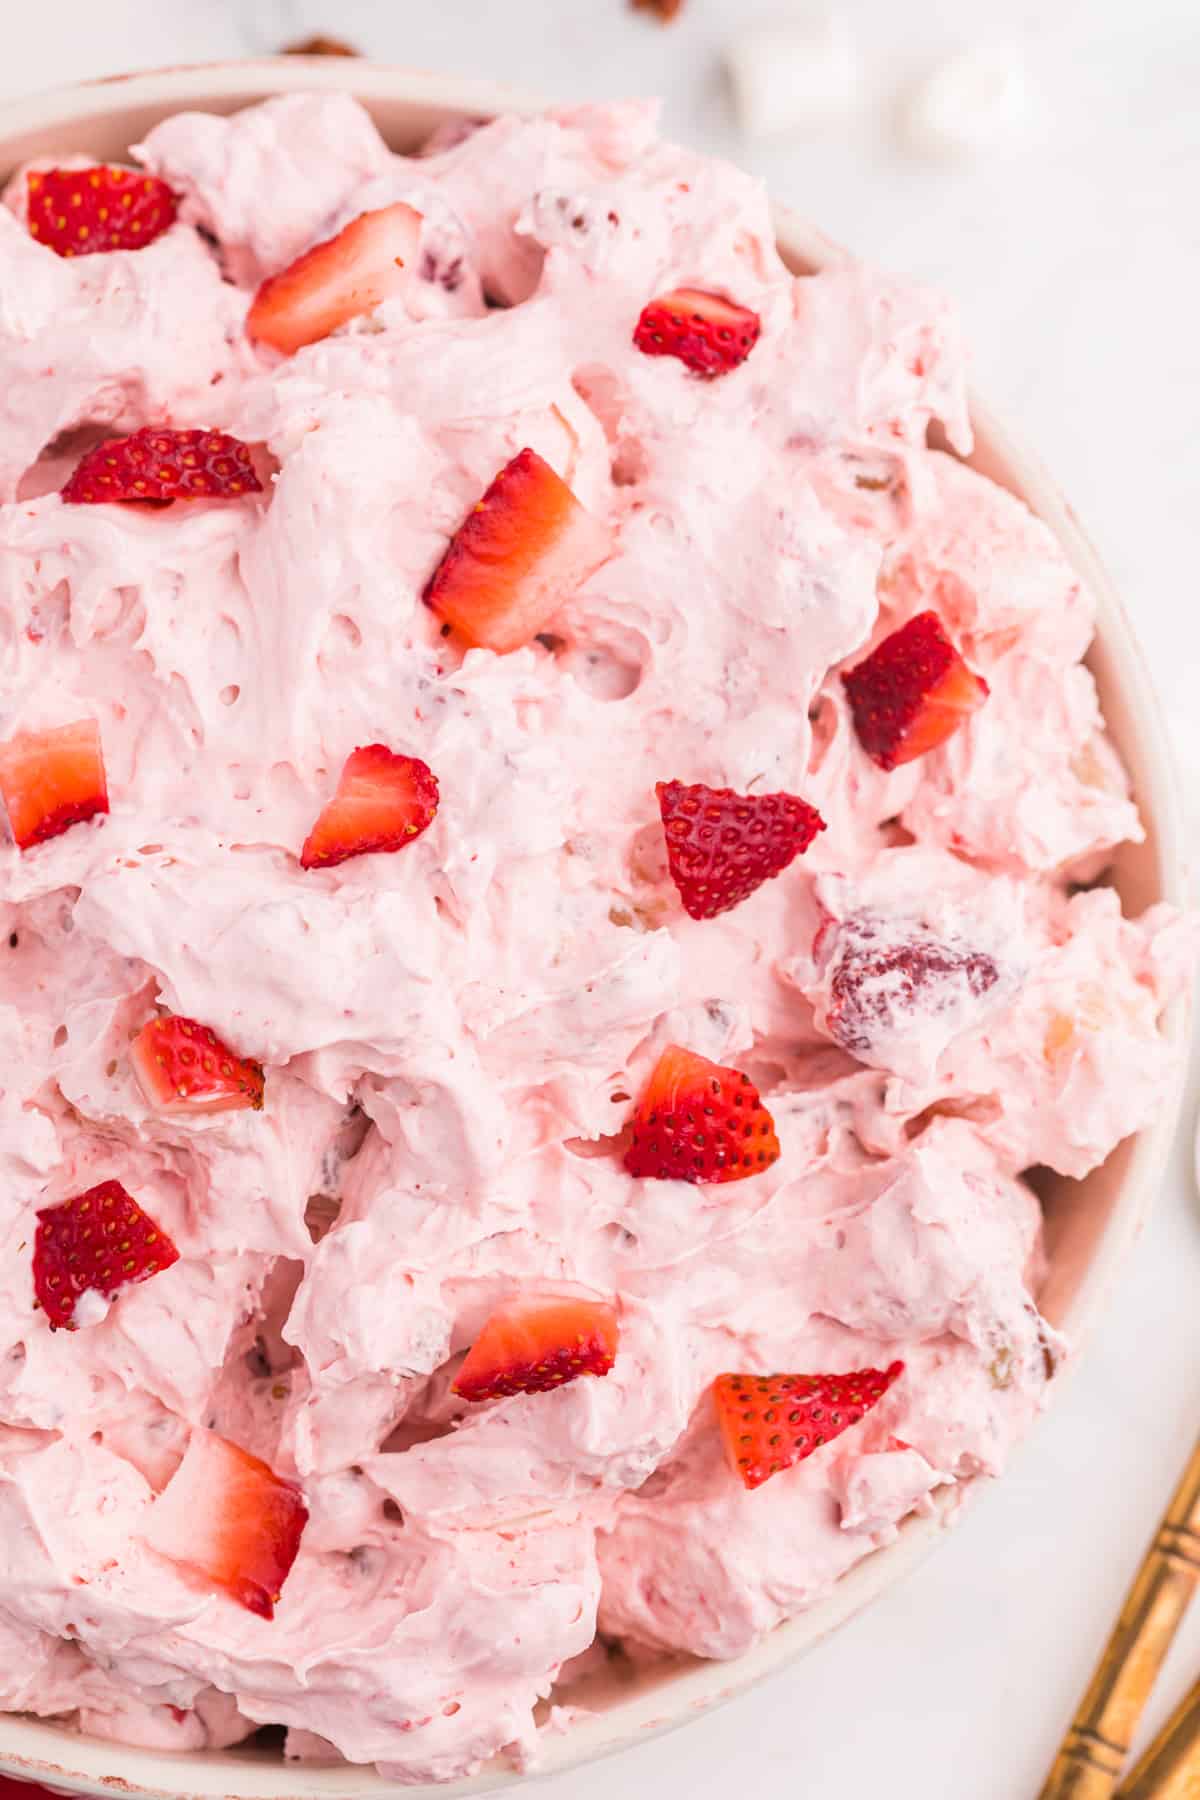 Strawberry Fluff Dessert For Valentine’s Day